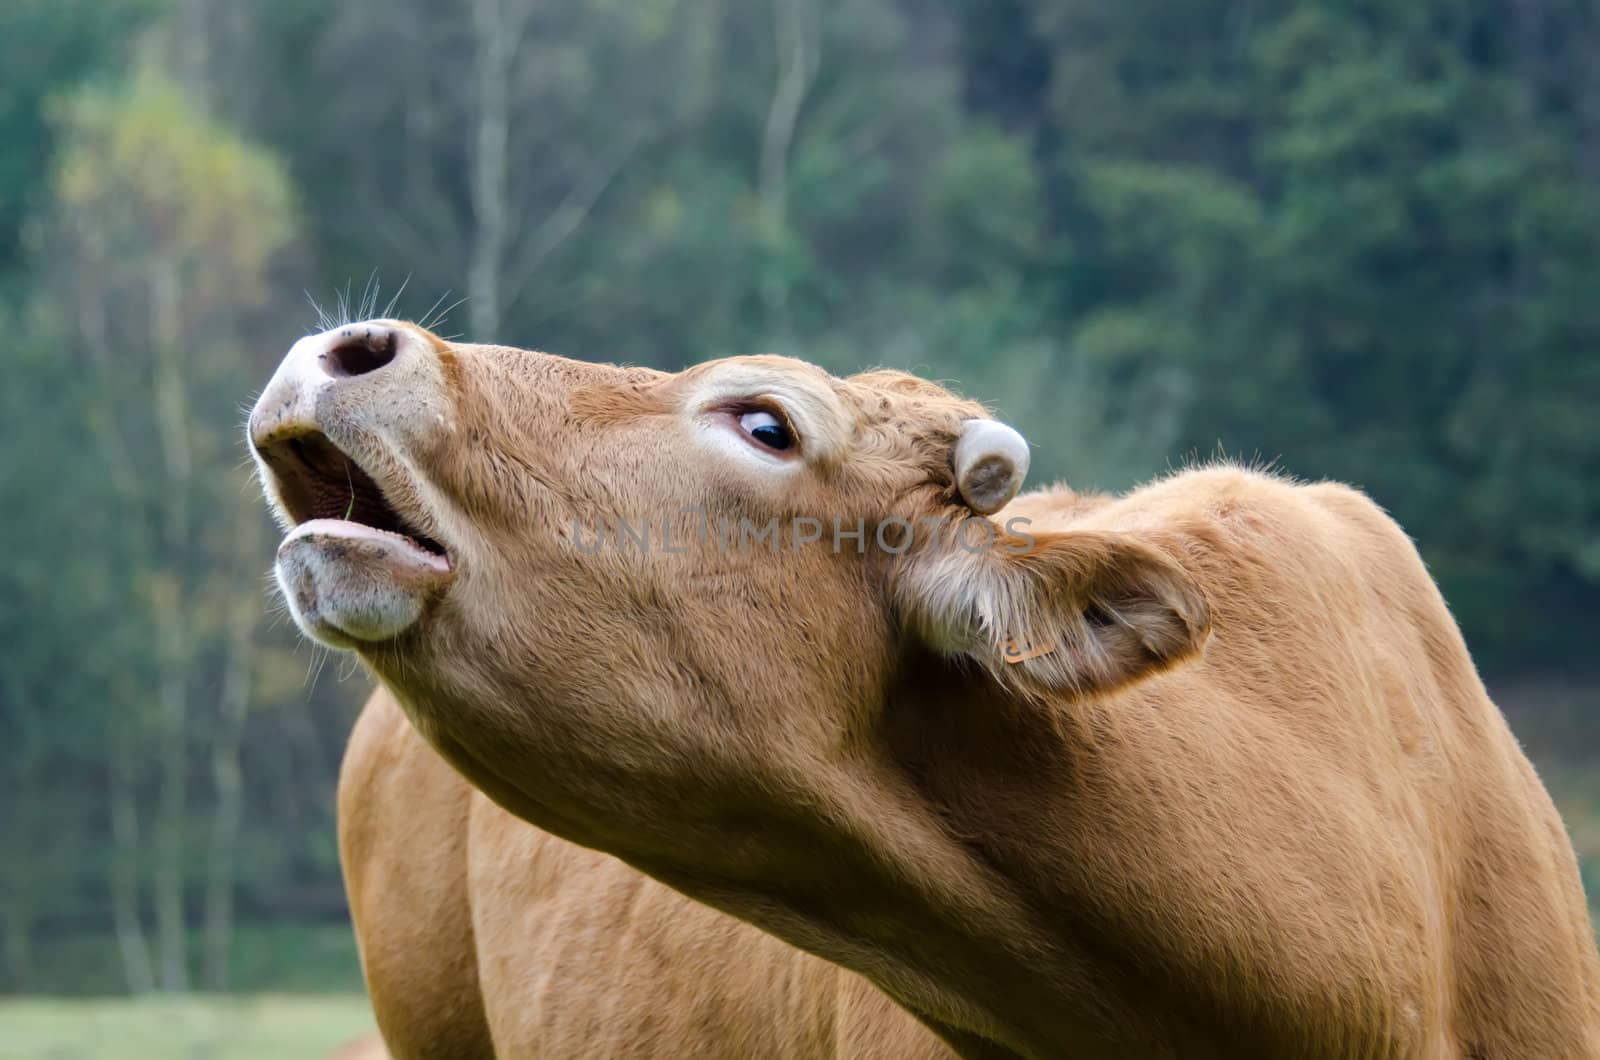 the cow moos by njaj